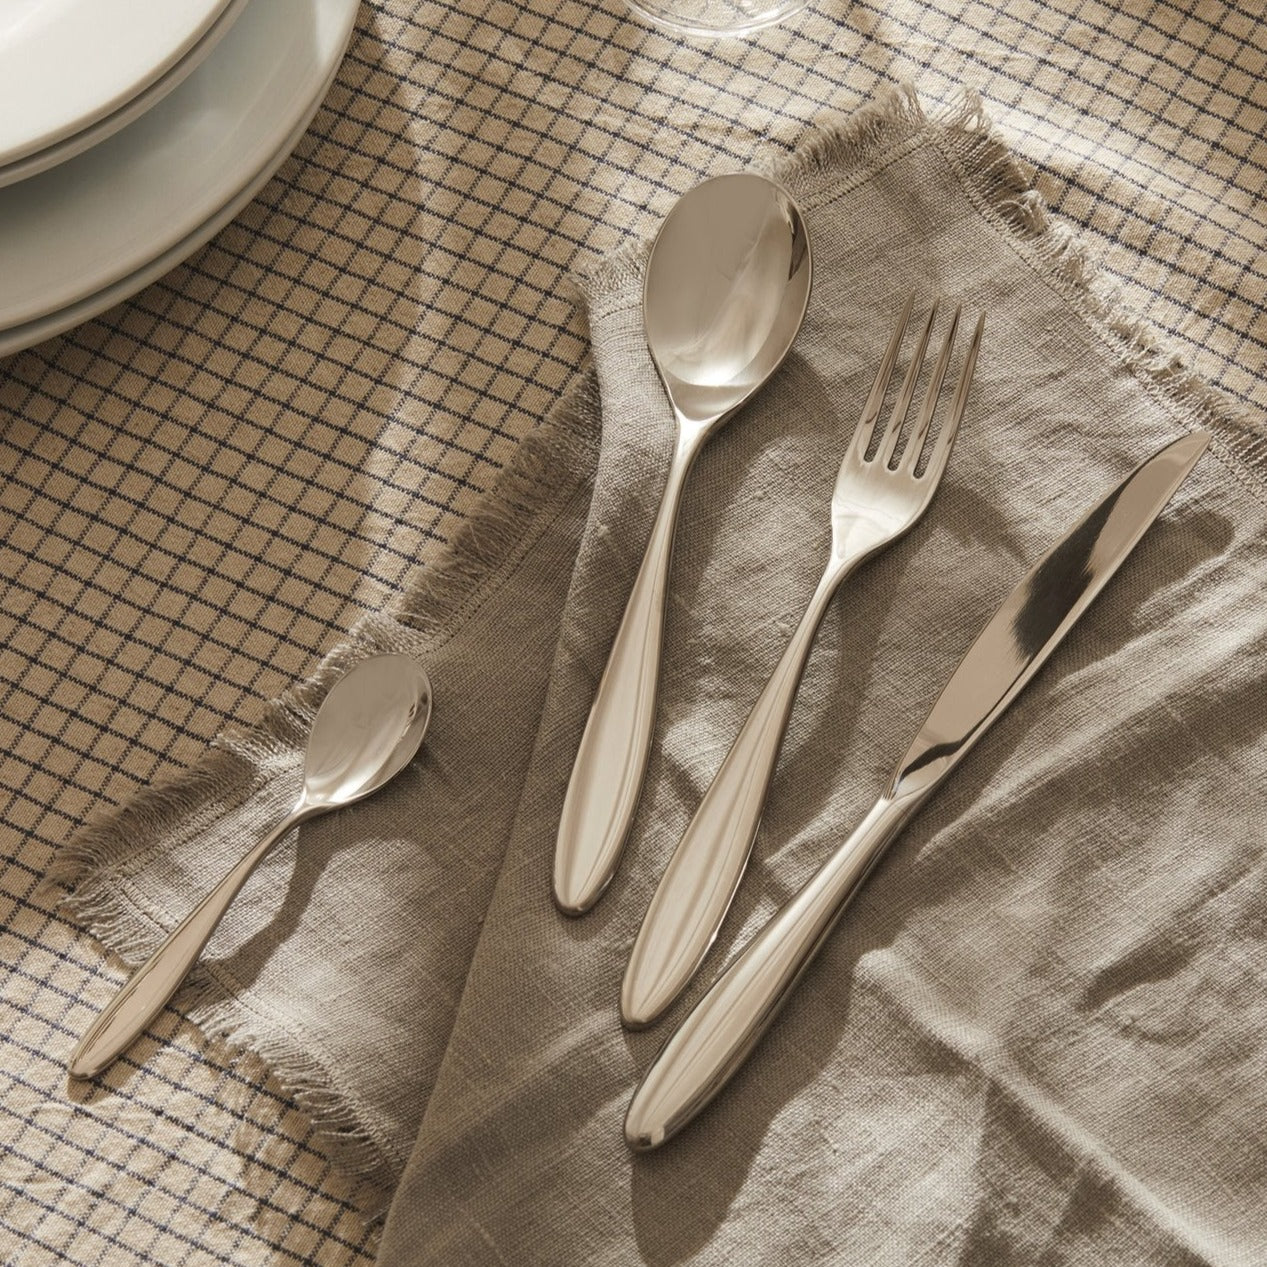 Alessi Mami Cutlery | Panik Design